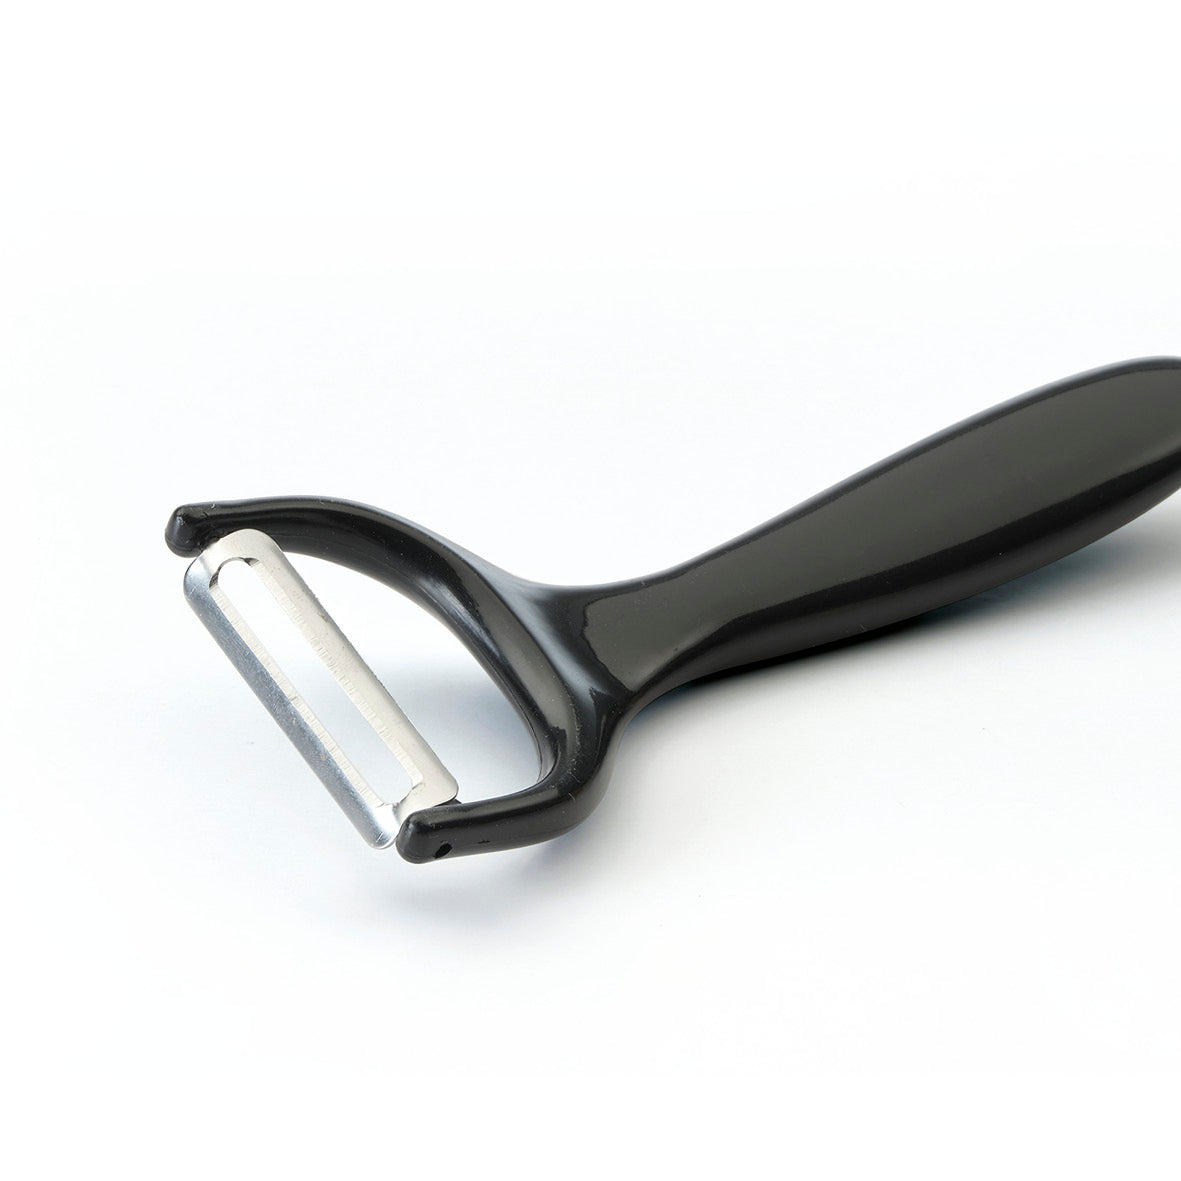 Couteau de chef en acier inoxydable avec manche soft touch – Vipshopboutic